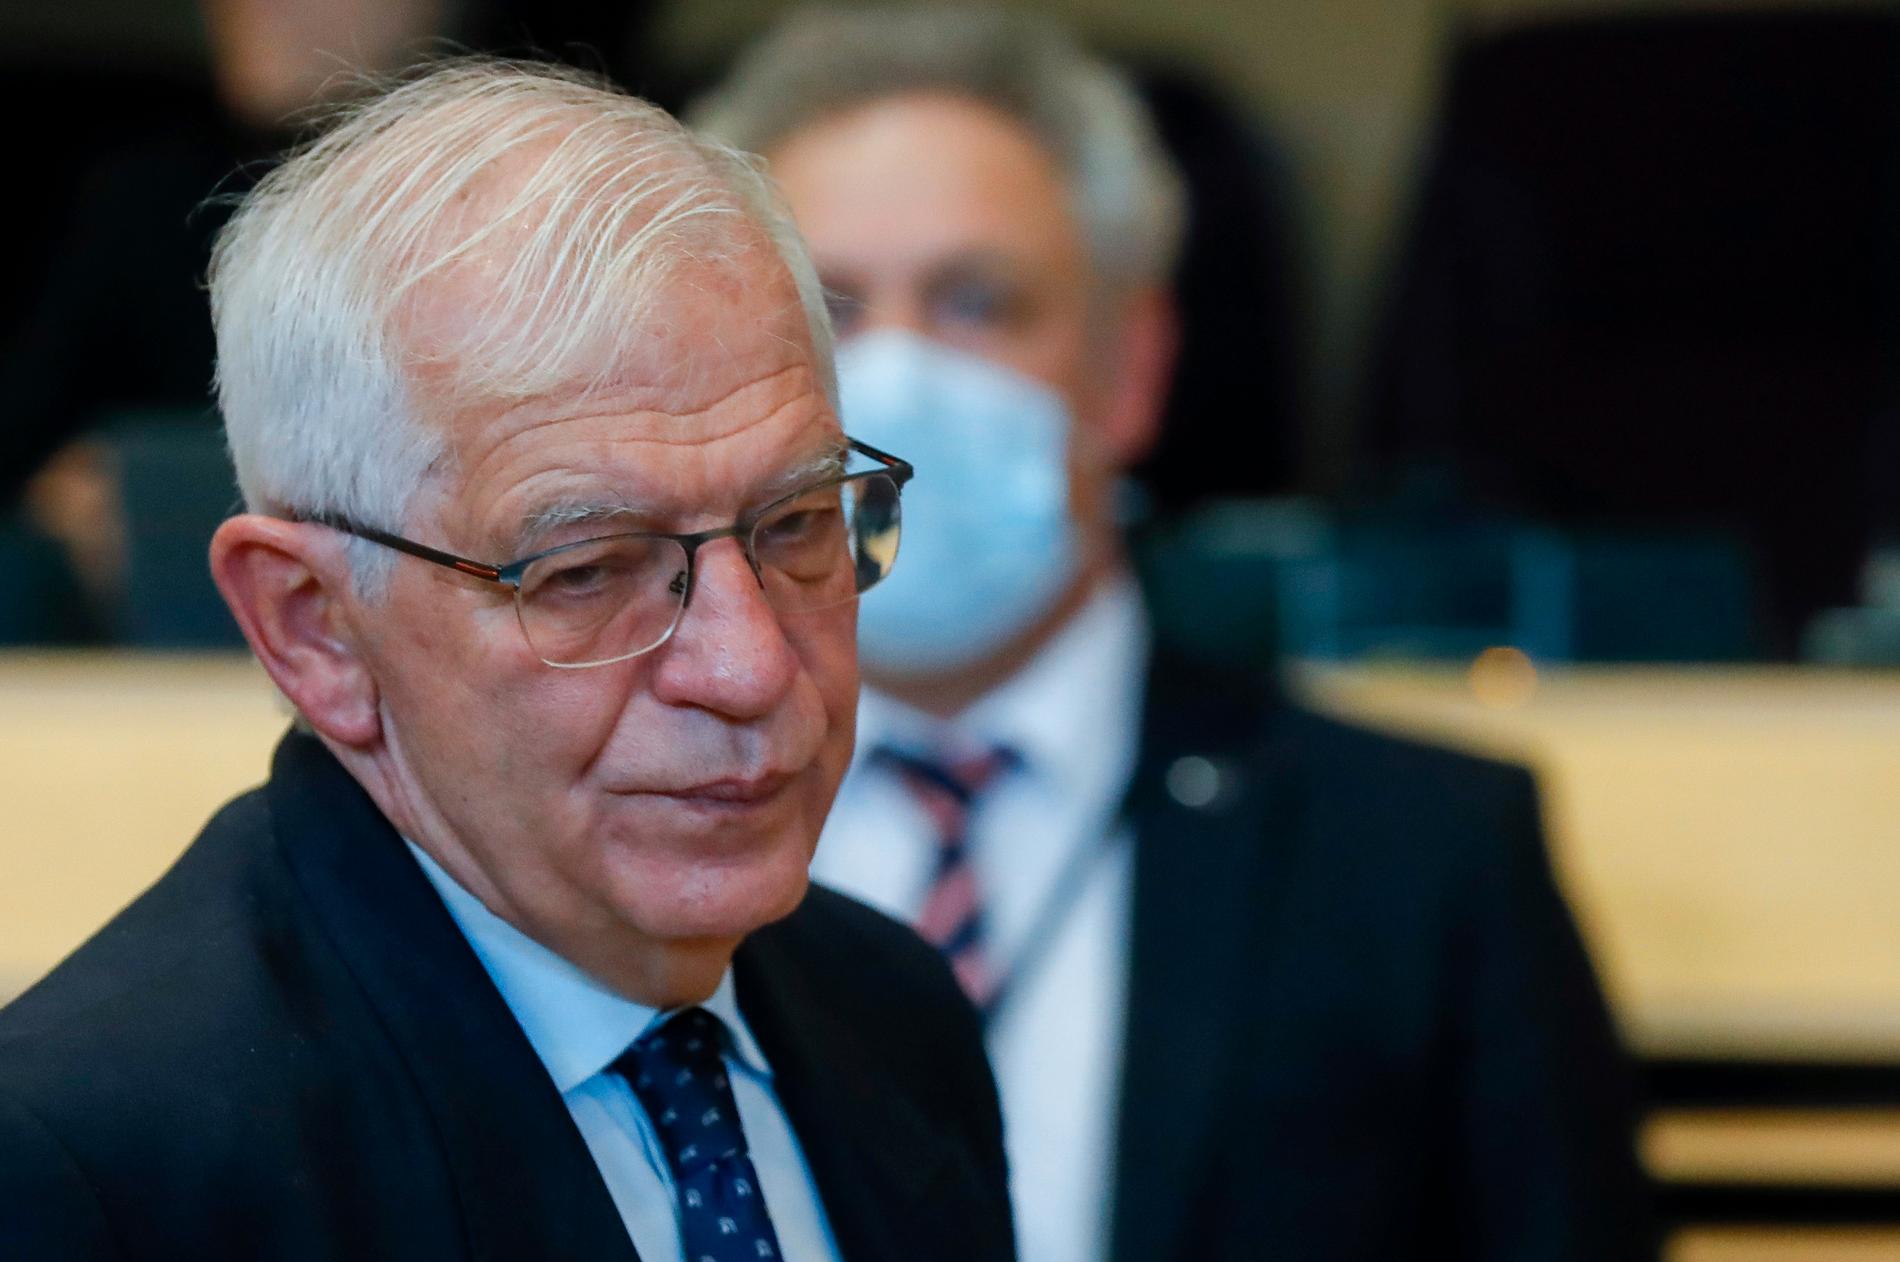 EU:s utrikeschef Josep Borrell har fått klartecken för utökade sanktioner mot Belarus. Arkivbild.